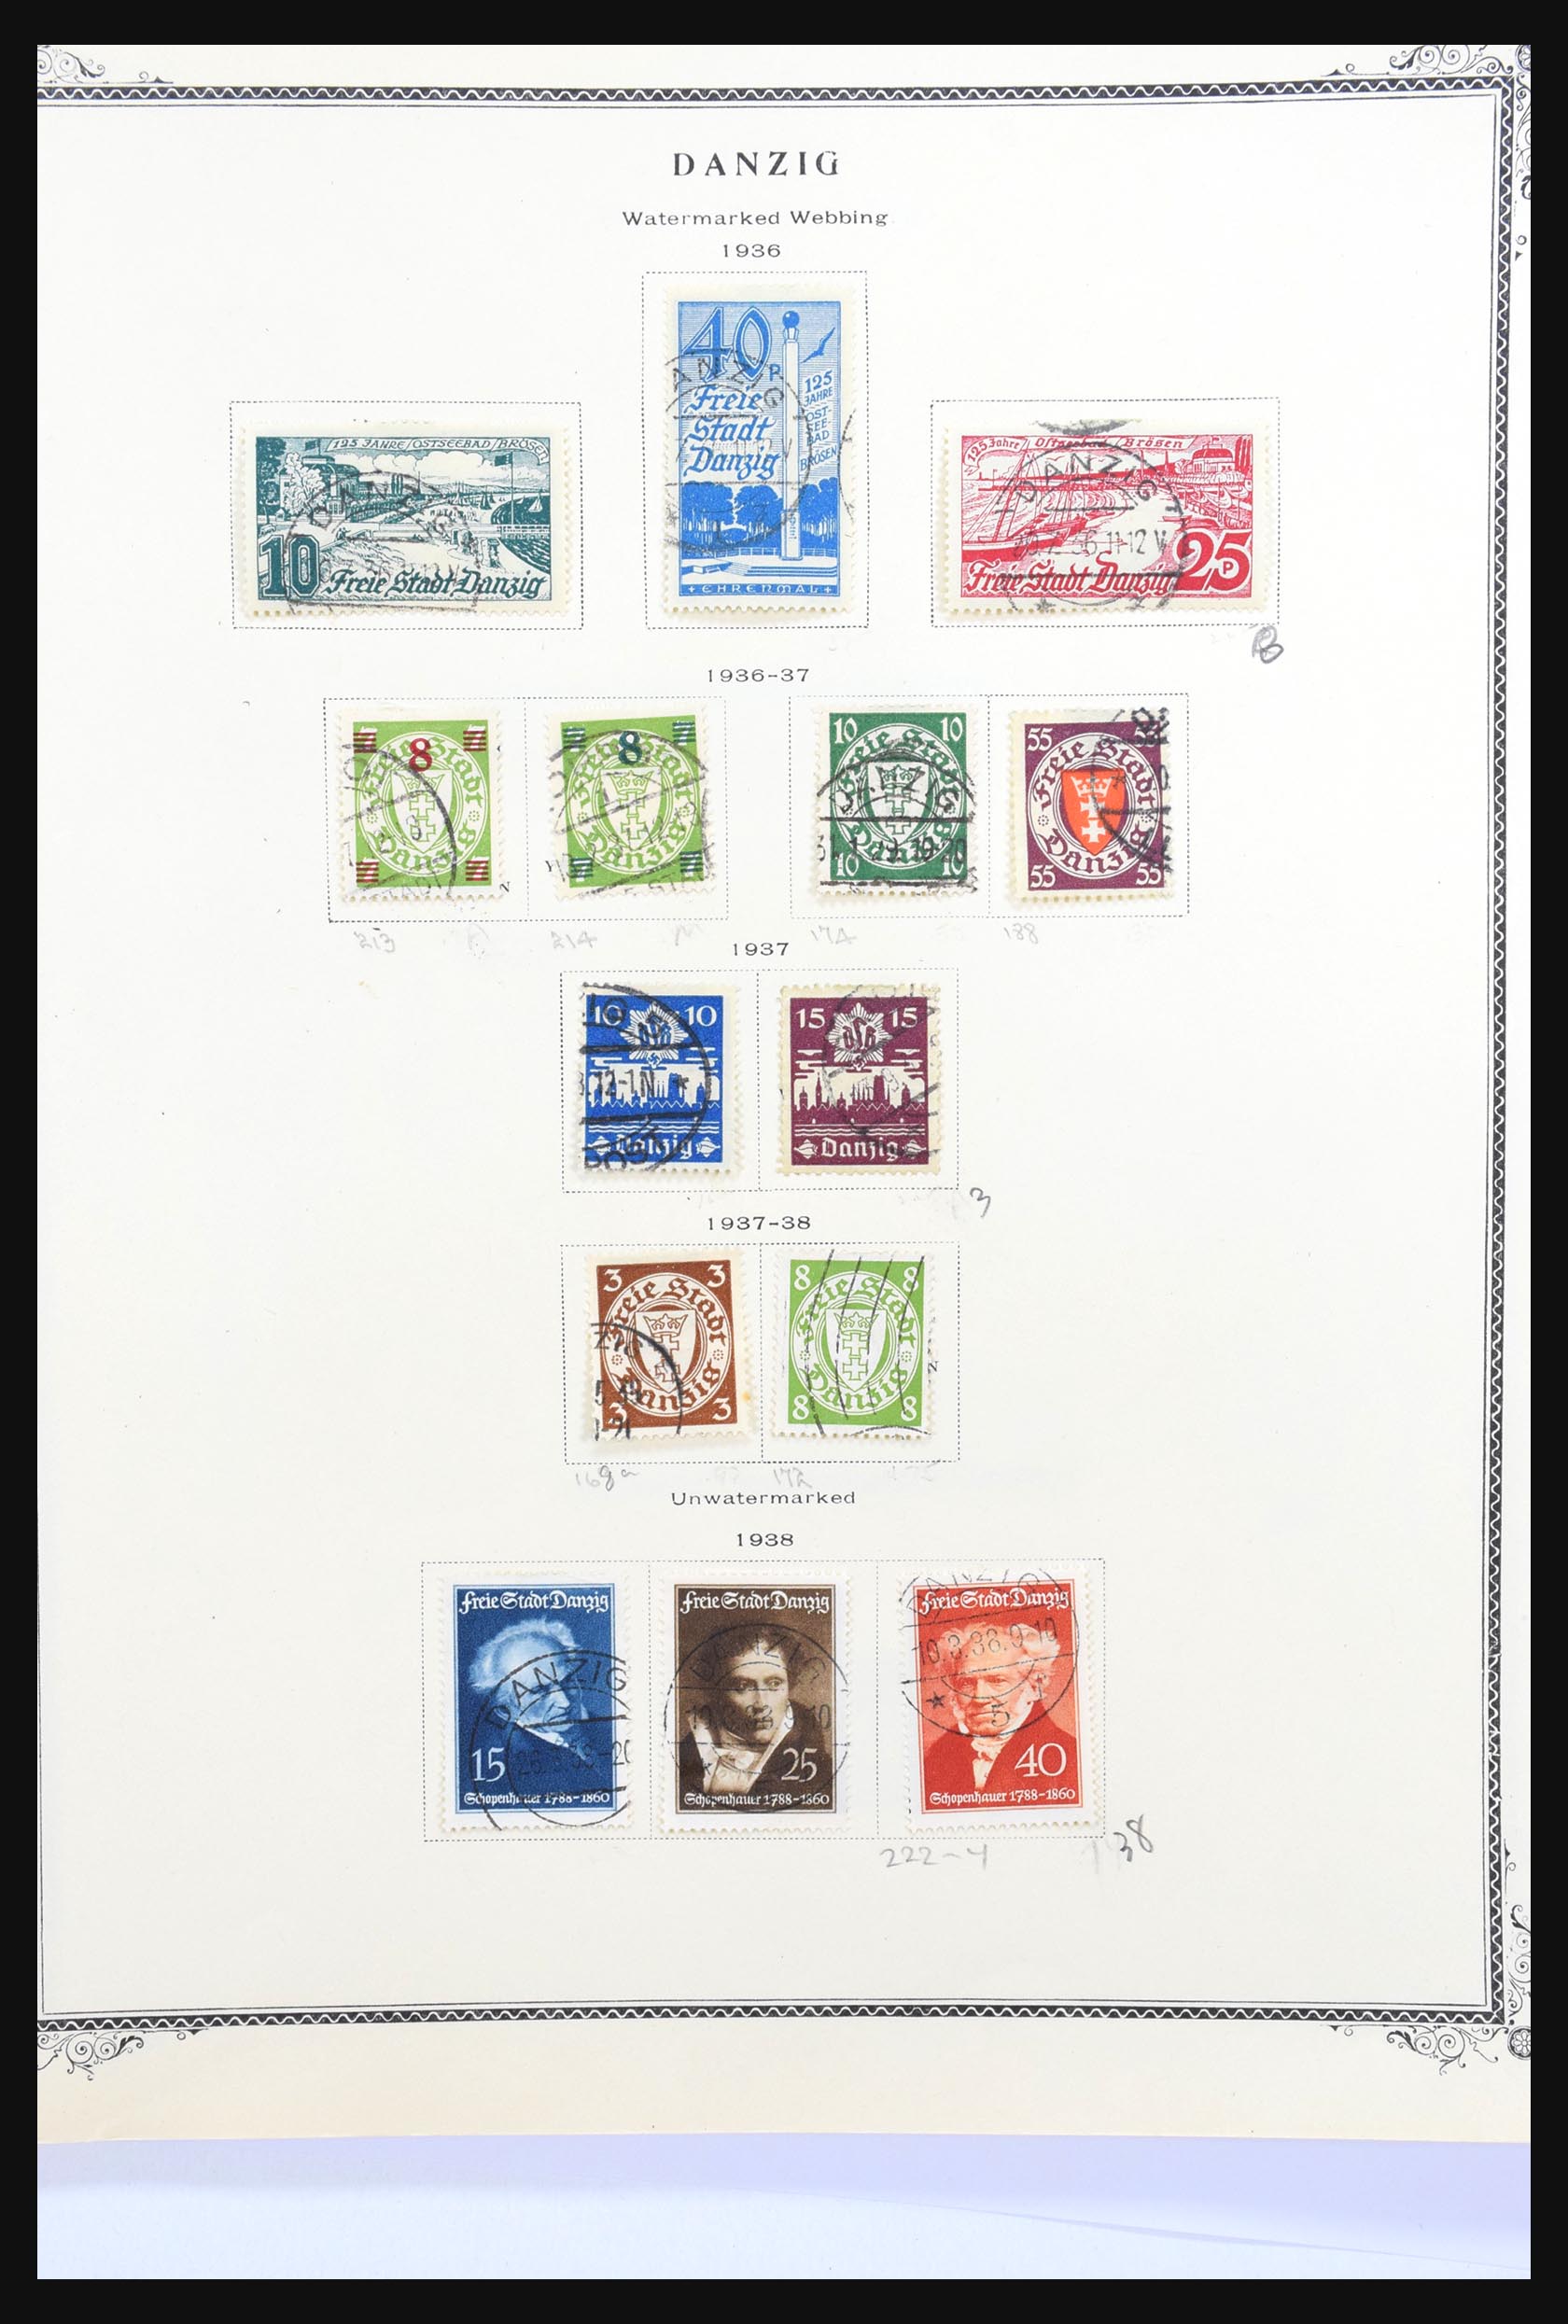 31300 066 - 31300 Duitsland superverzameling 1849-1990.